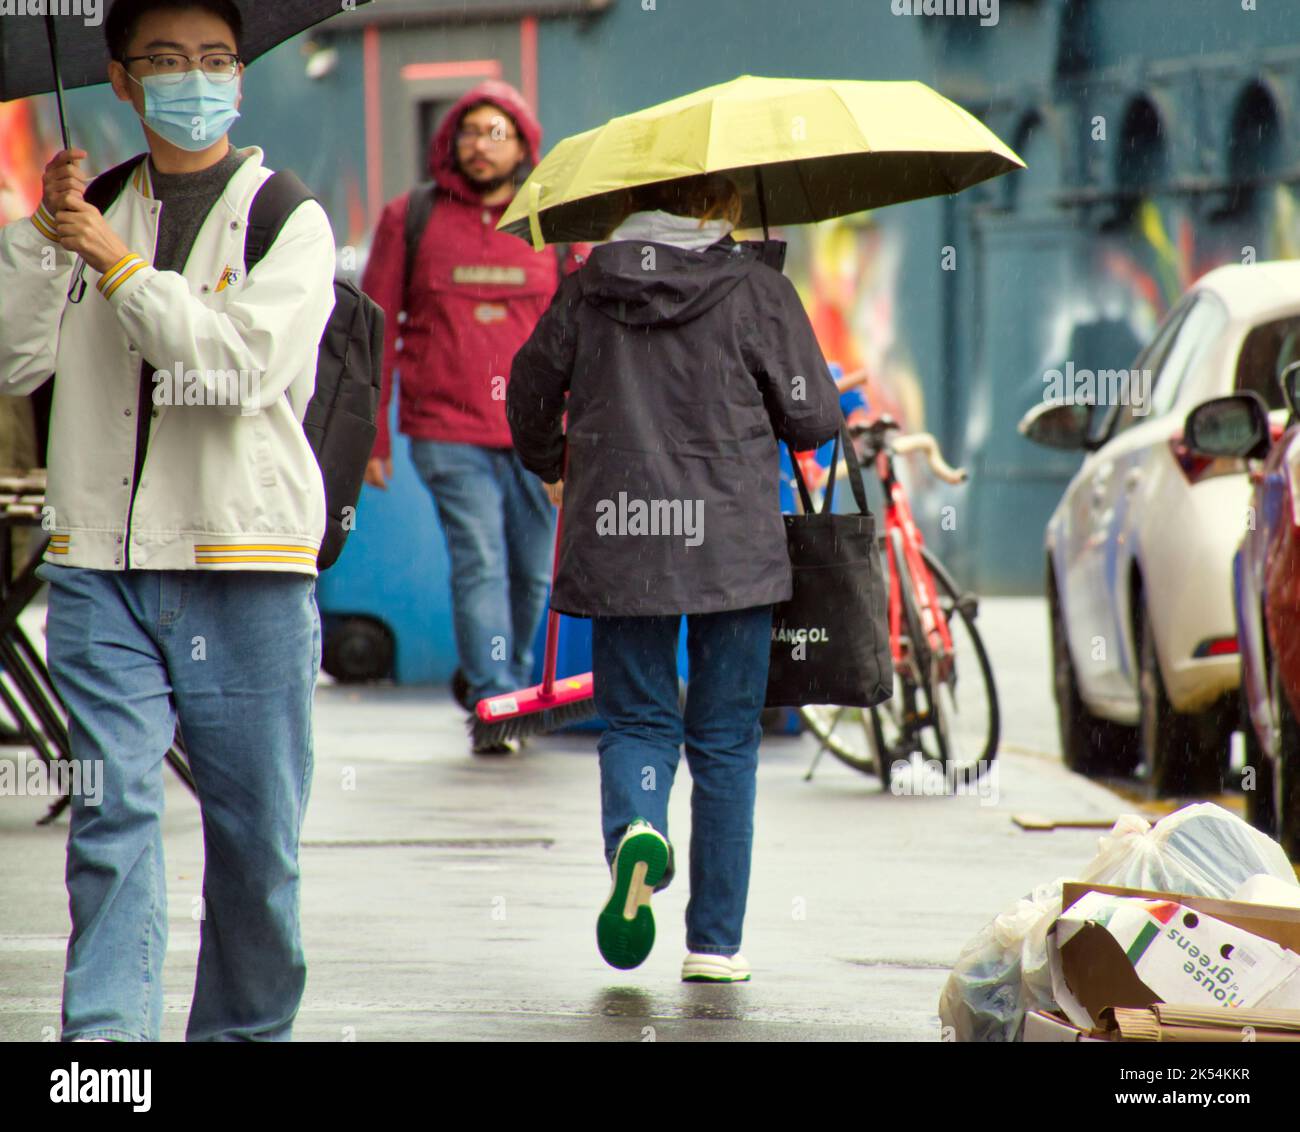 raining wet weather on Buchannan street sees umbrellas Stock Photo